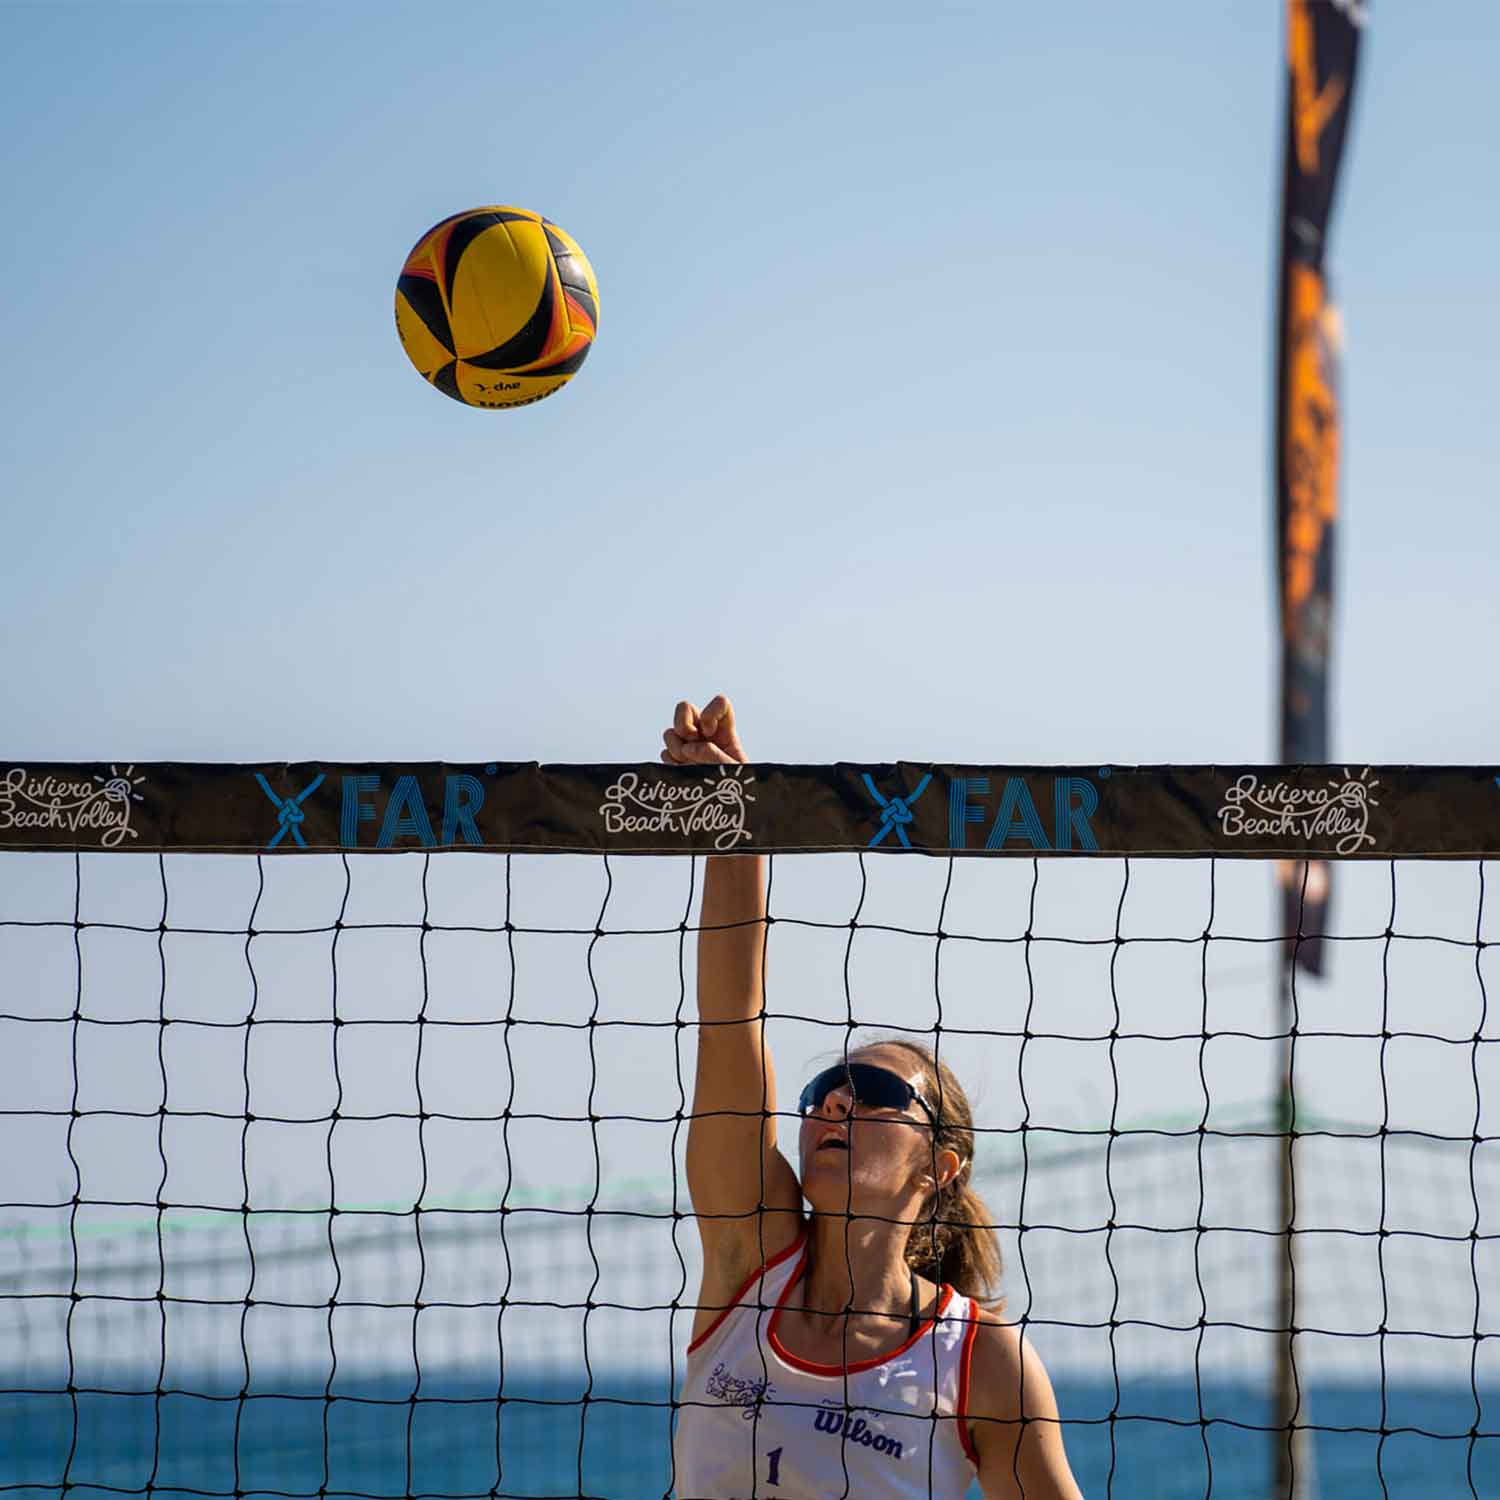 Netze für Volleyball, Strandtennis und Strandfußball